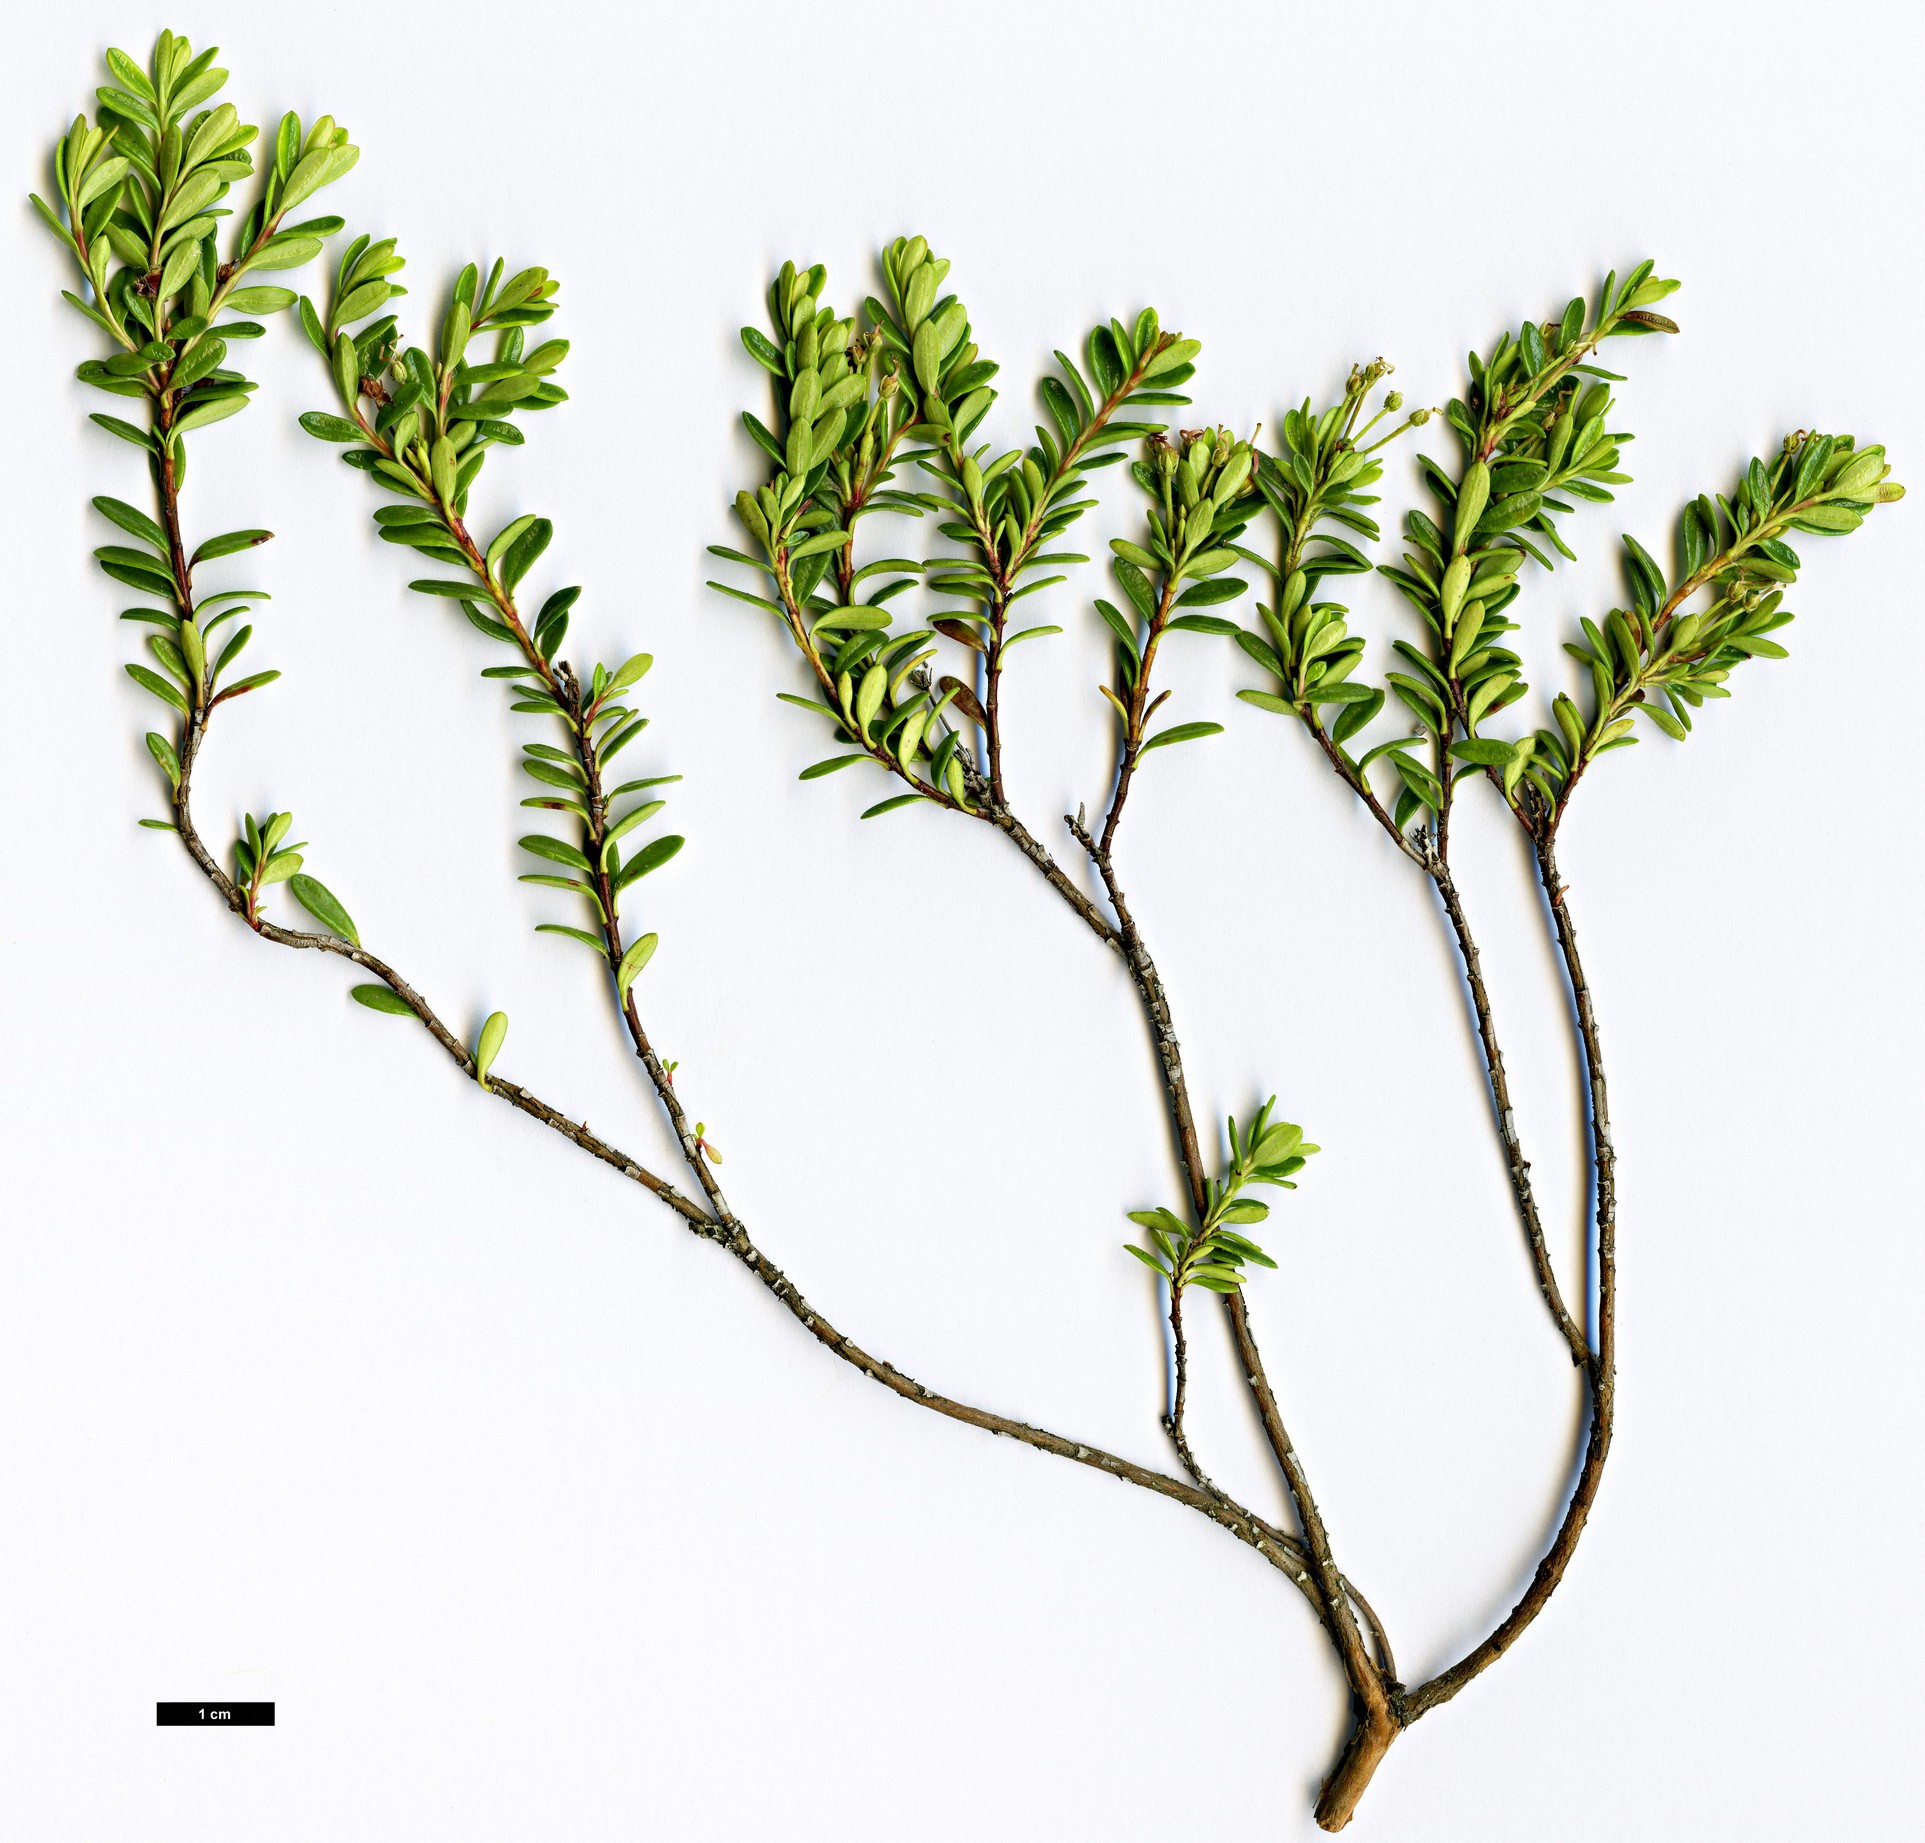 High resolution image: Family: Ericaceae - Genus: Kalmia - Taxon: buxifolia